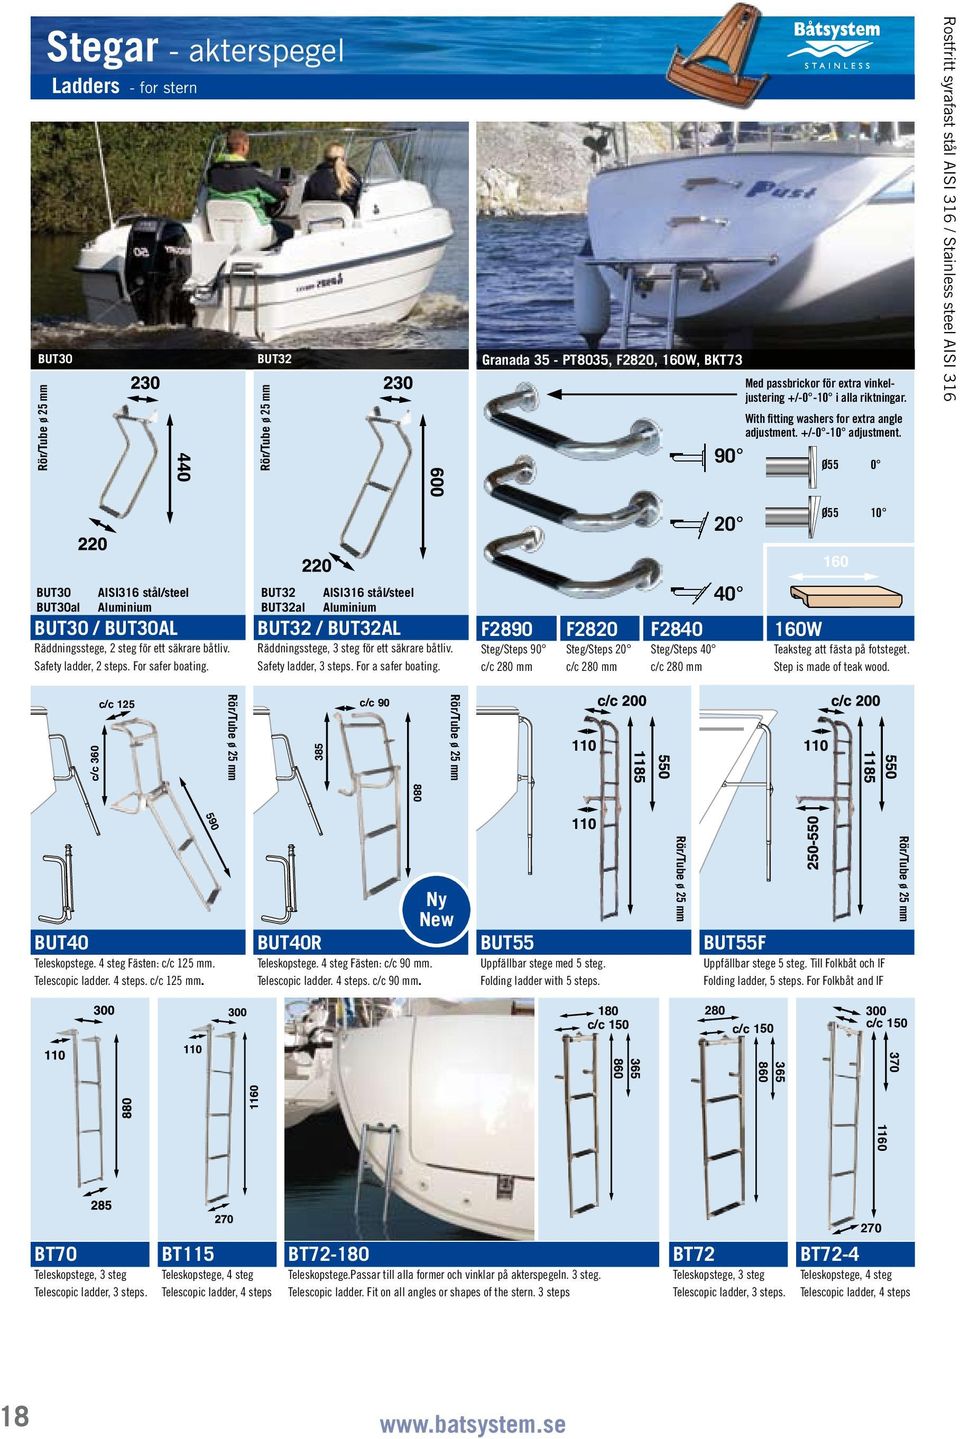 Safety ladder, 2 steps. For safer boating. BUT32 BUT32al AISI316 stål/steel Aluminium BUT32 / BUT32AL Räddningsstege, 3 steg för ett säkrare båtliv. Safety ladder, 3 steps. For a safer boating.